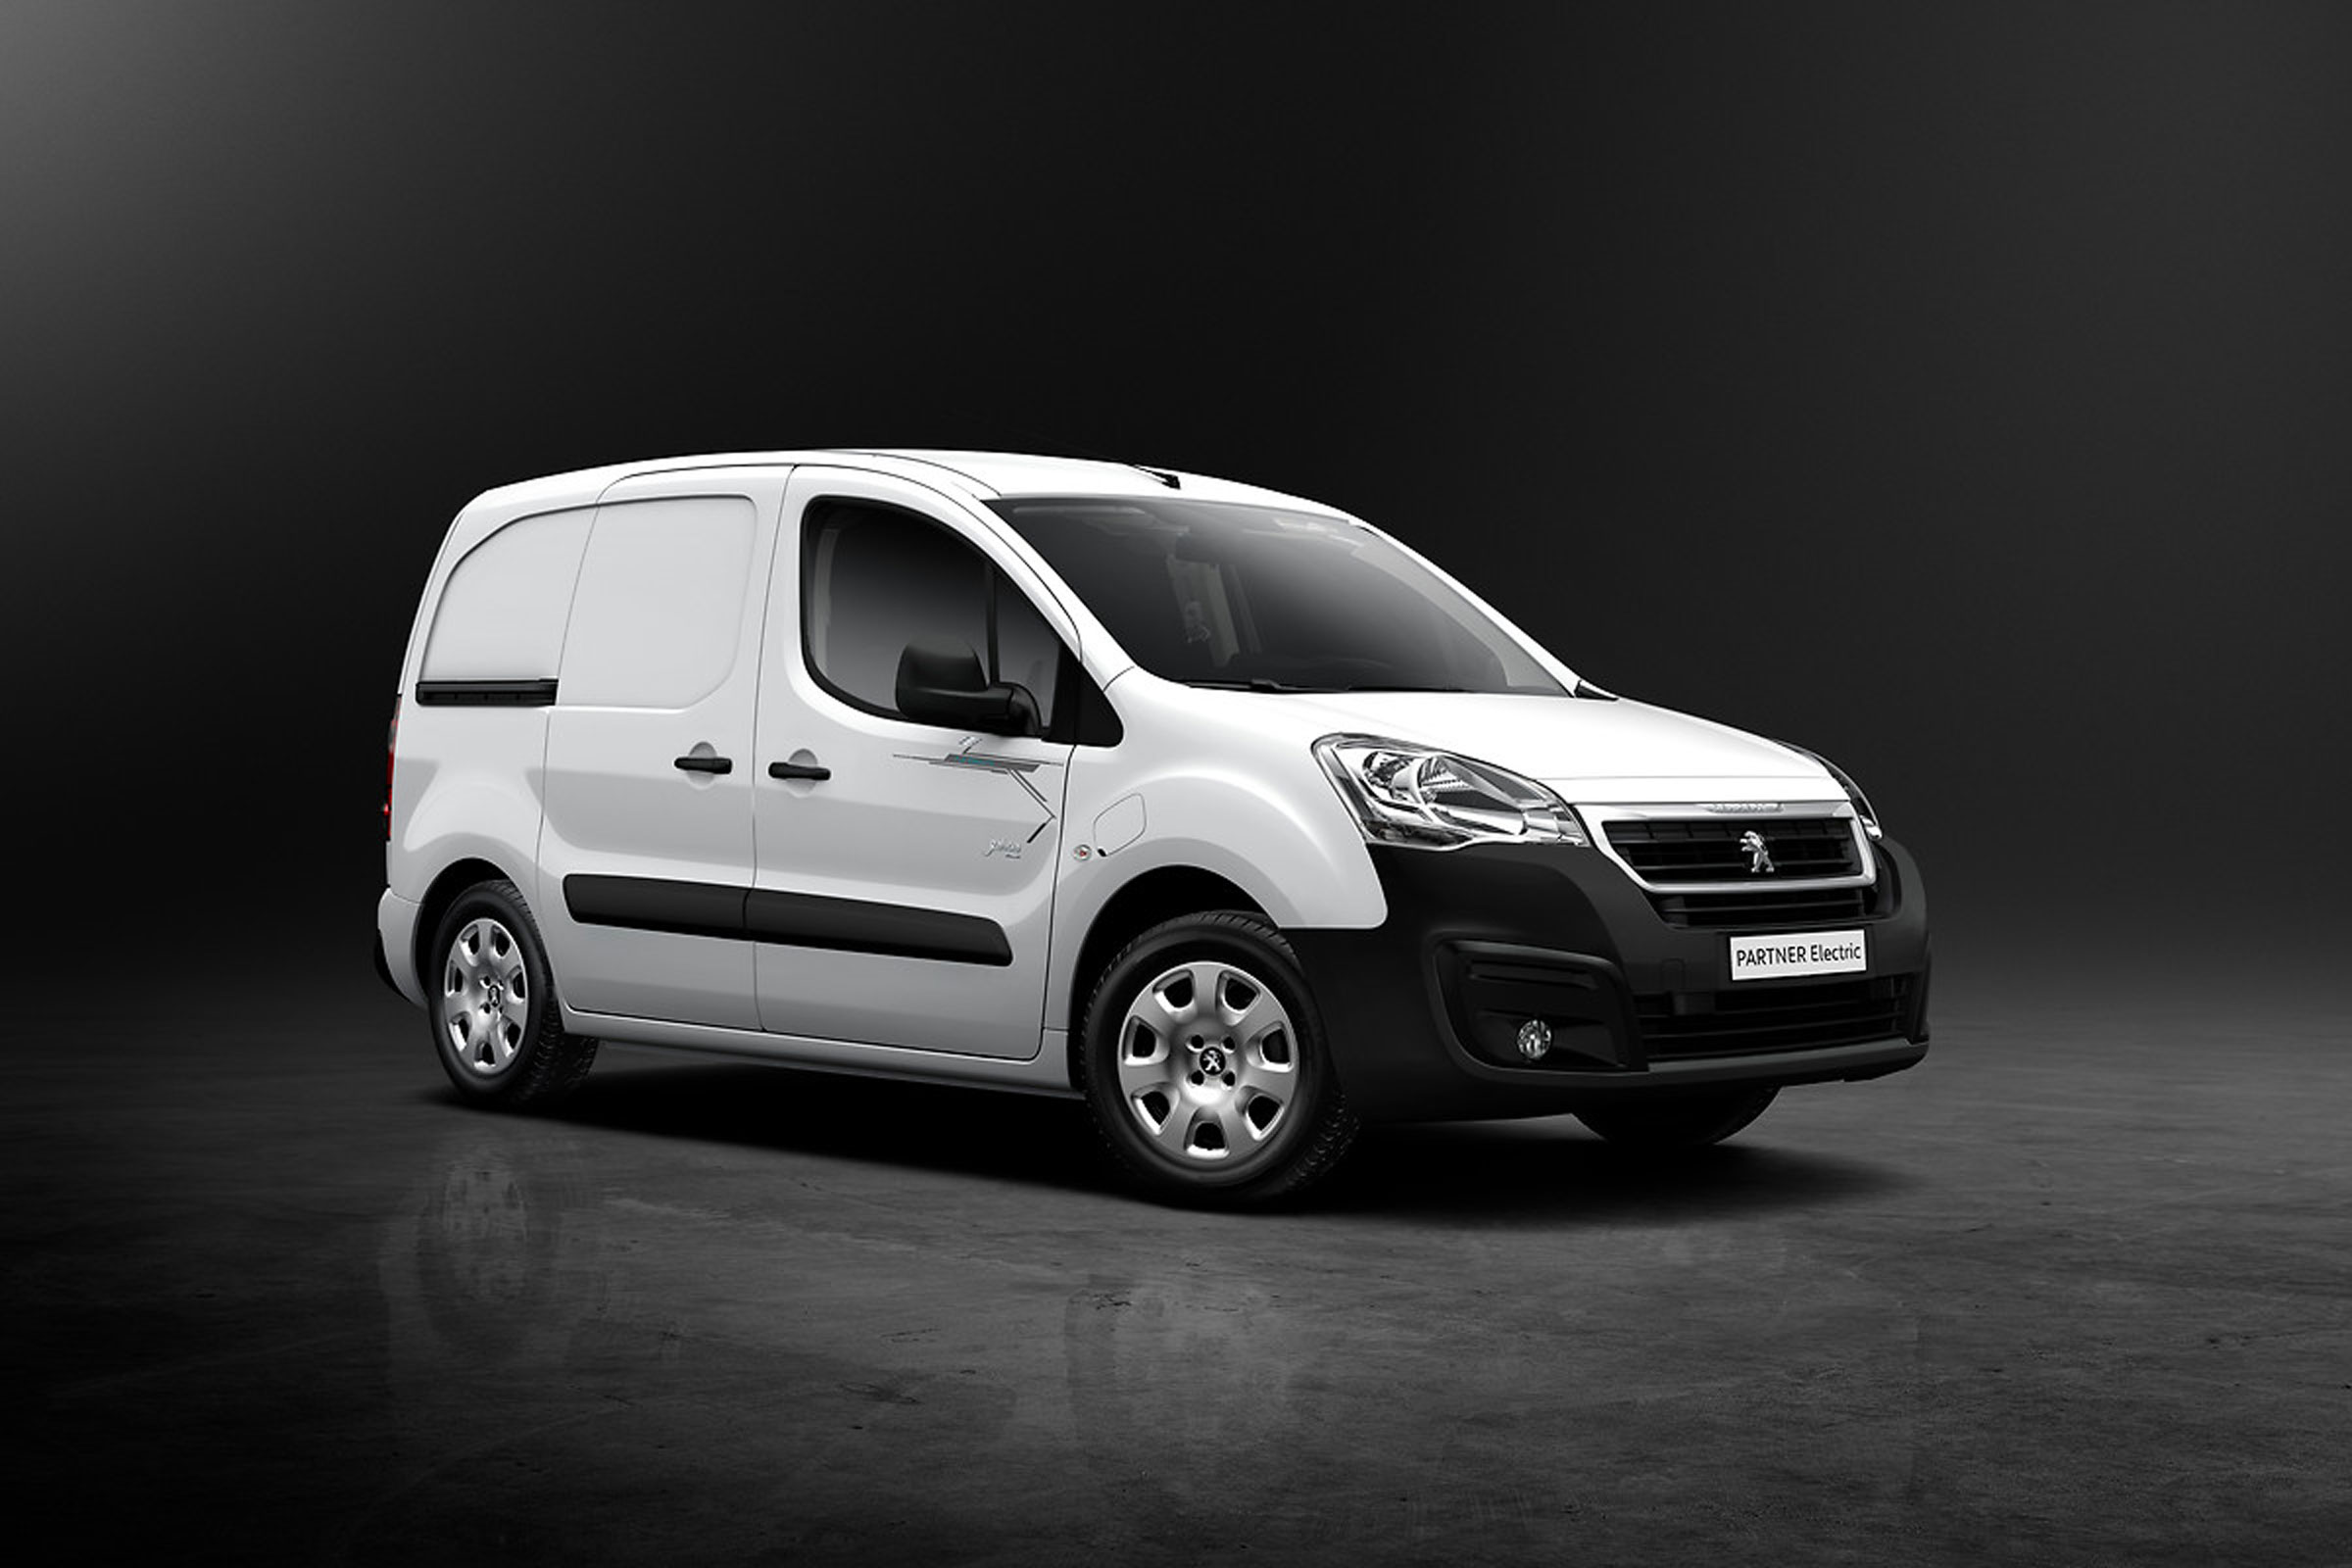 Peugeot Partner Electric van (2013-2019) running costs | DrivingElectric